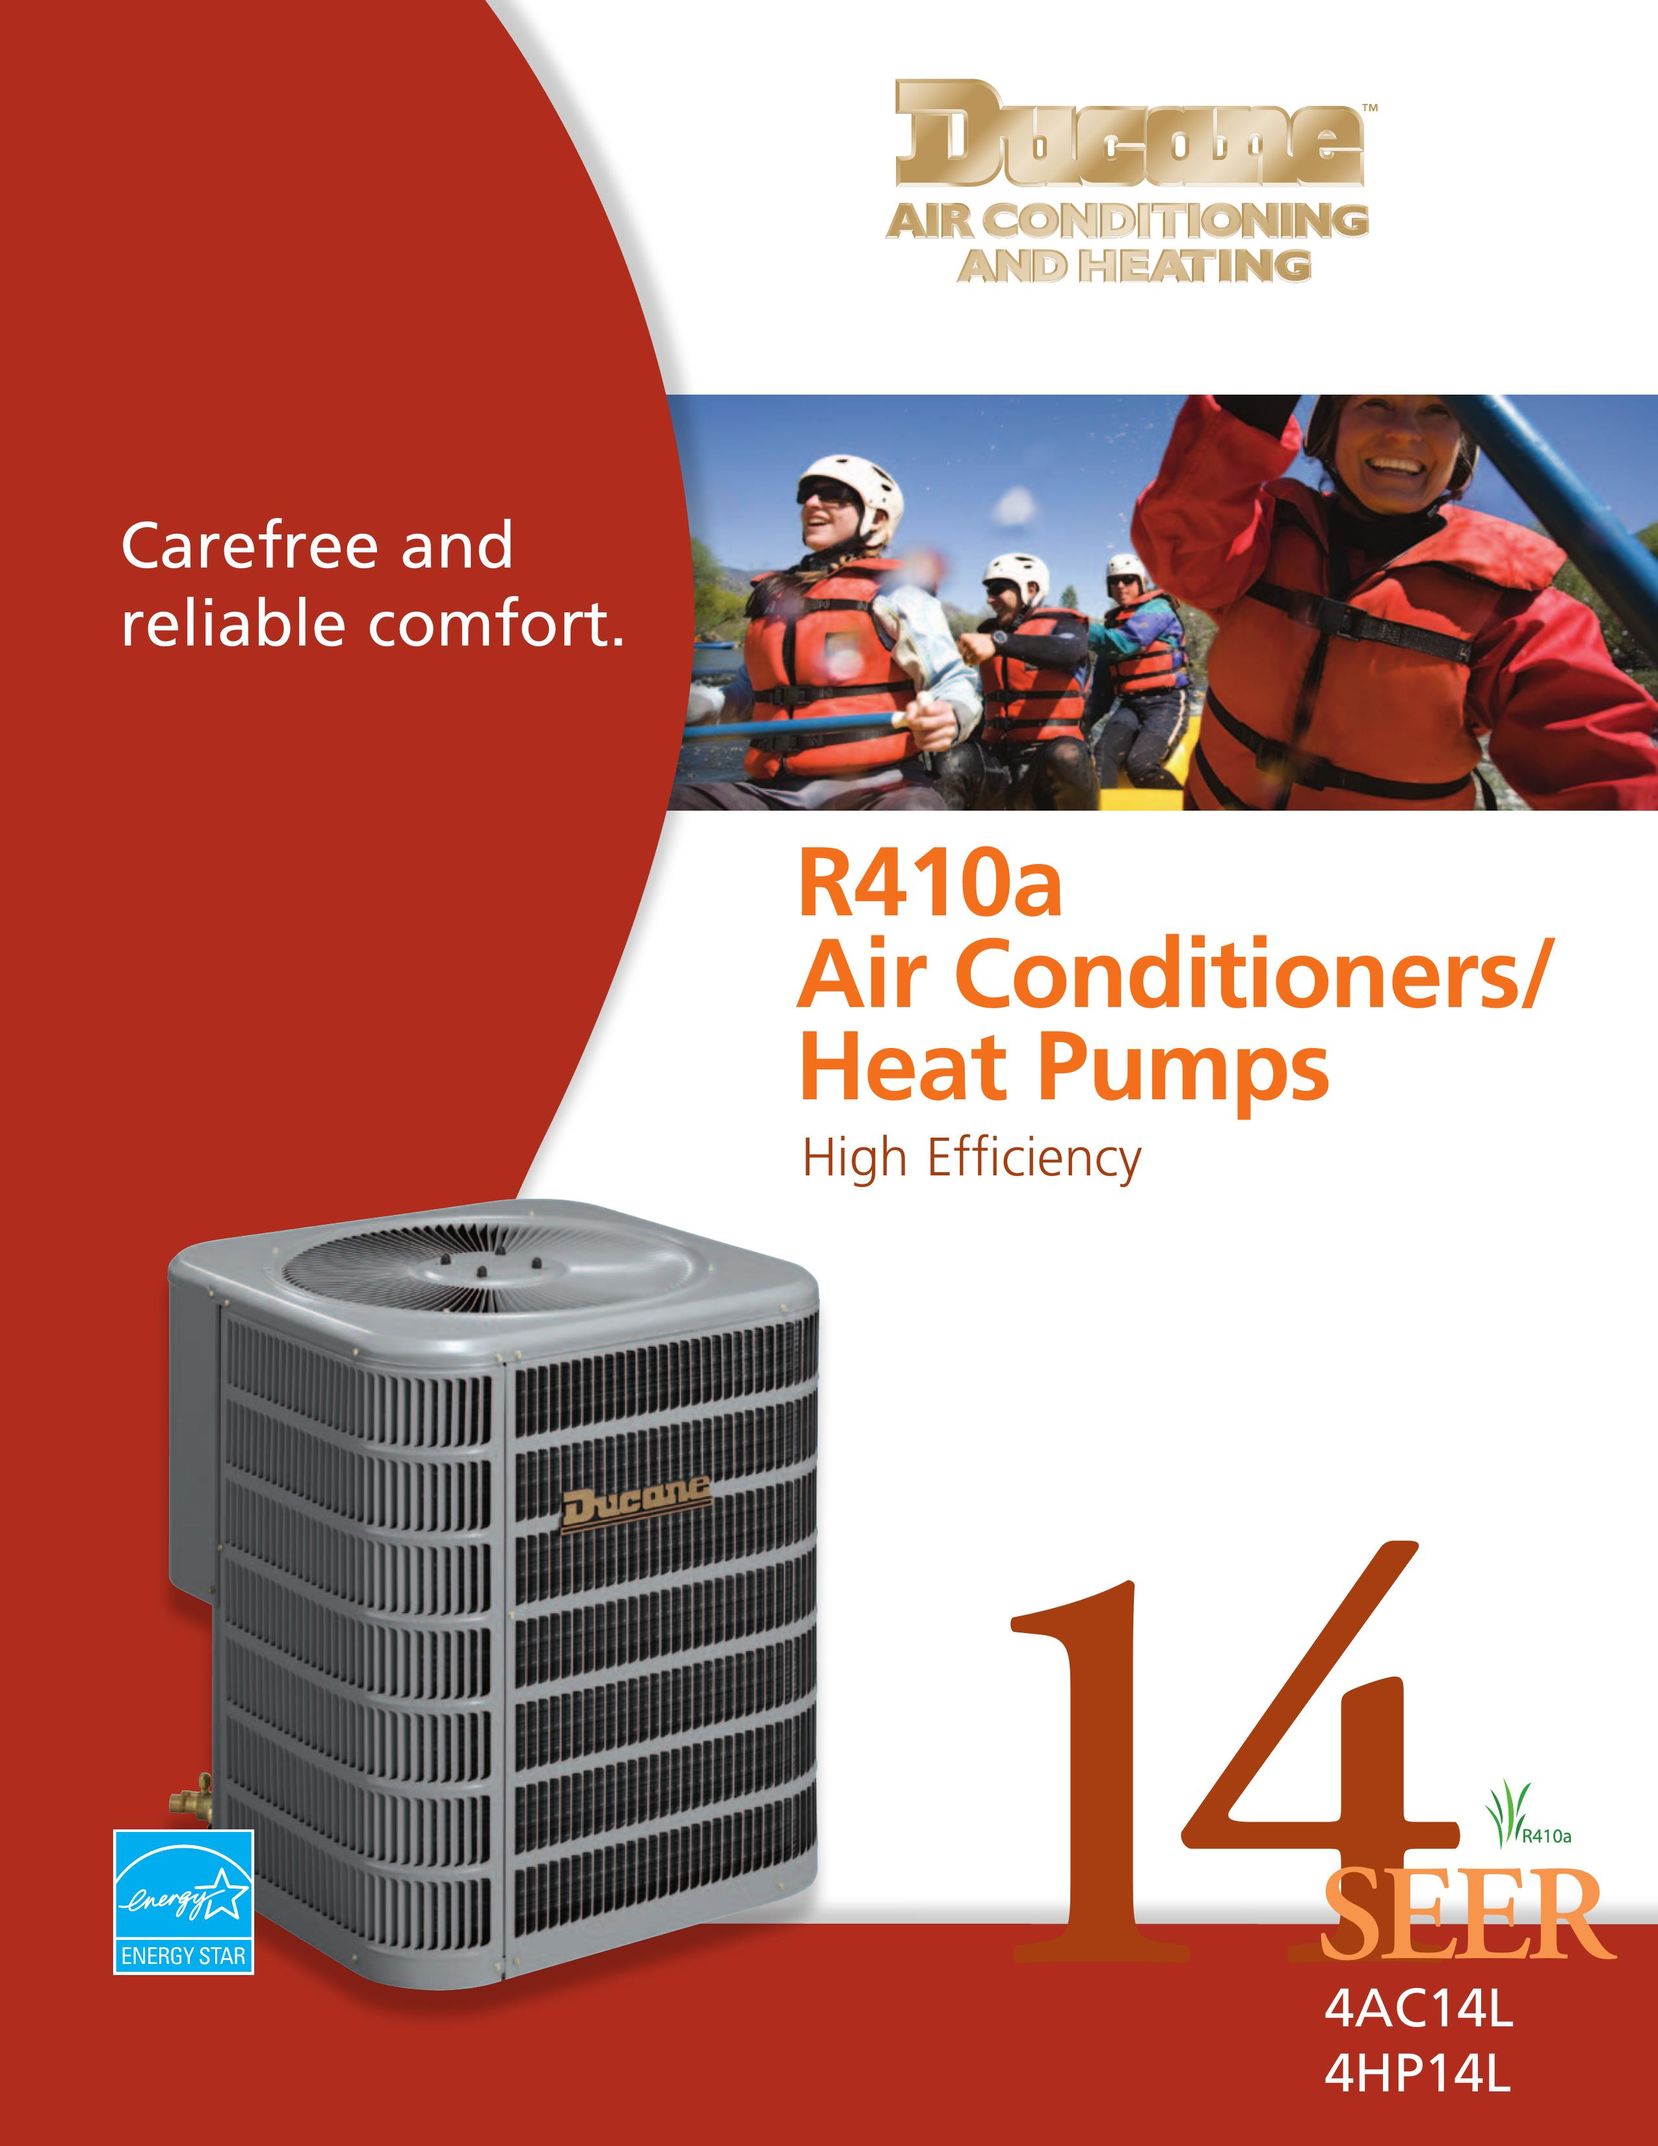 Ducane (HVAC) 4HP14L Air Conditioner User Manual